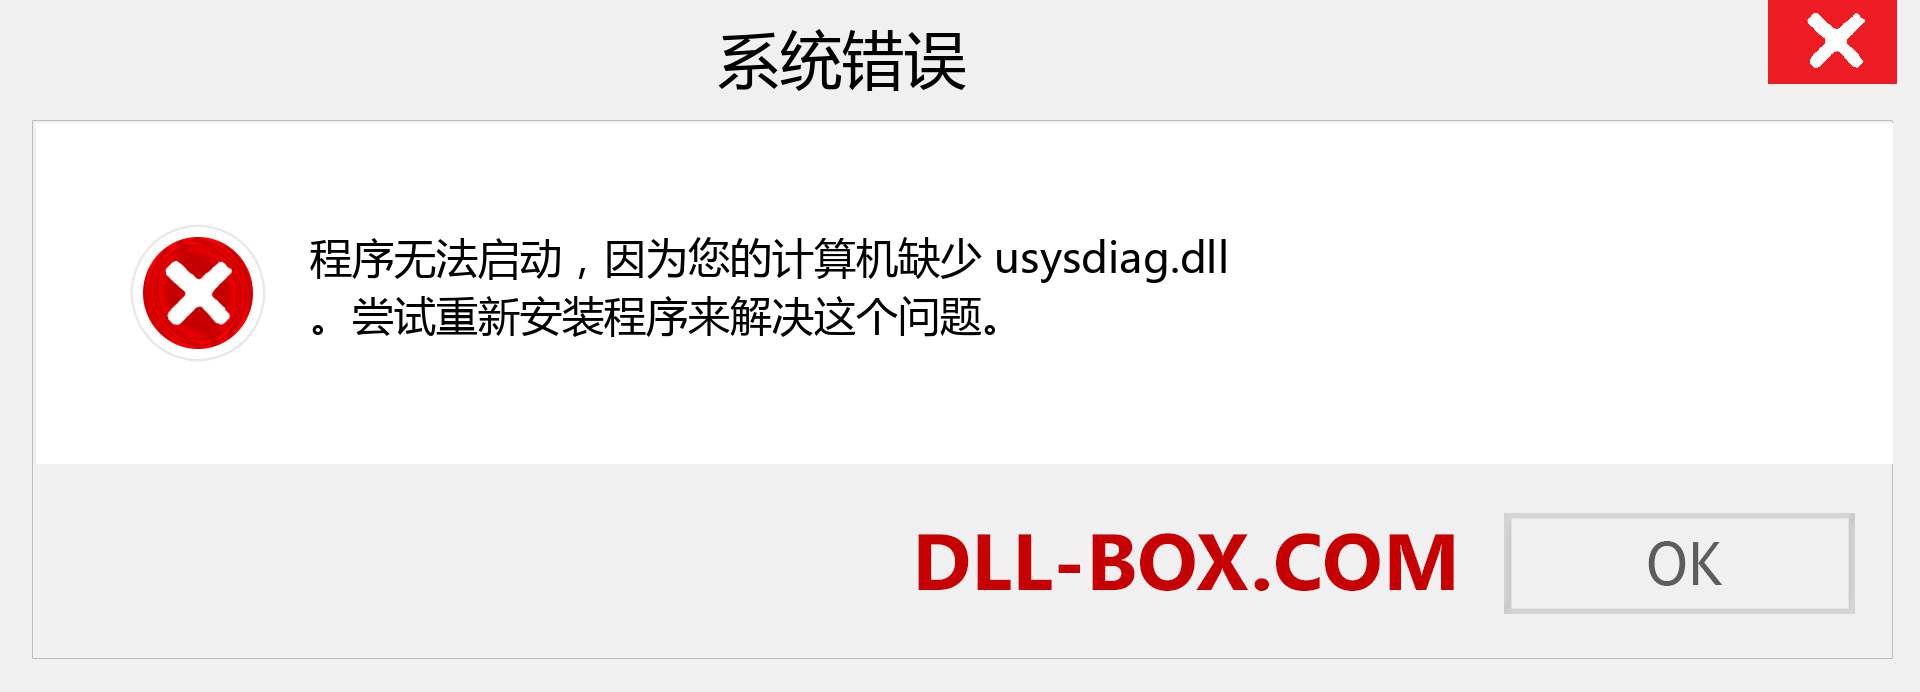 usysdiag.dll 文件丢失？。 适用于 Windows 7、8、10 的下载 - 修复 Windows、照片、图像上的 usysdiag dll 丢失错误